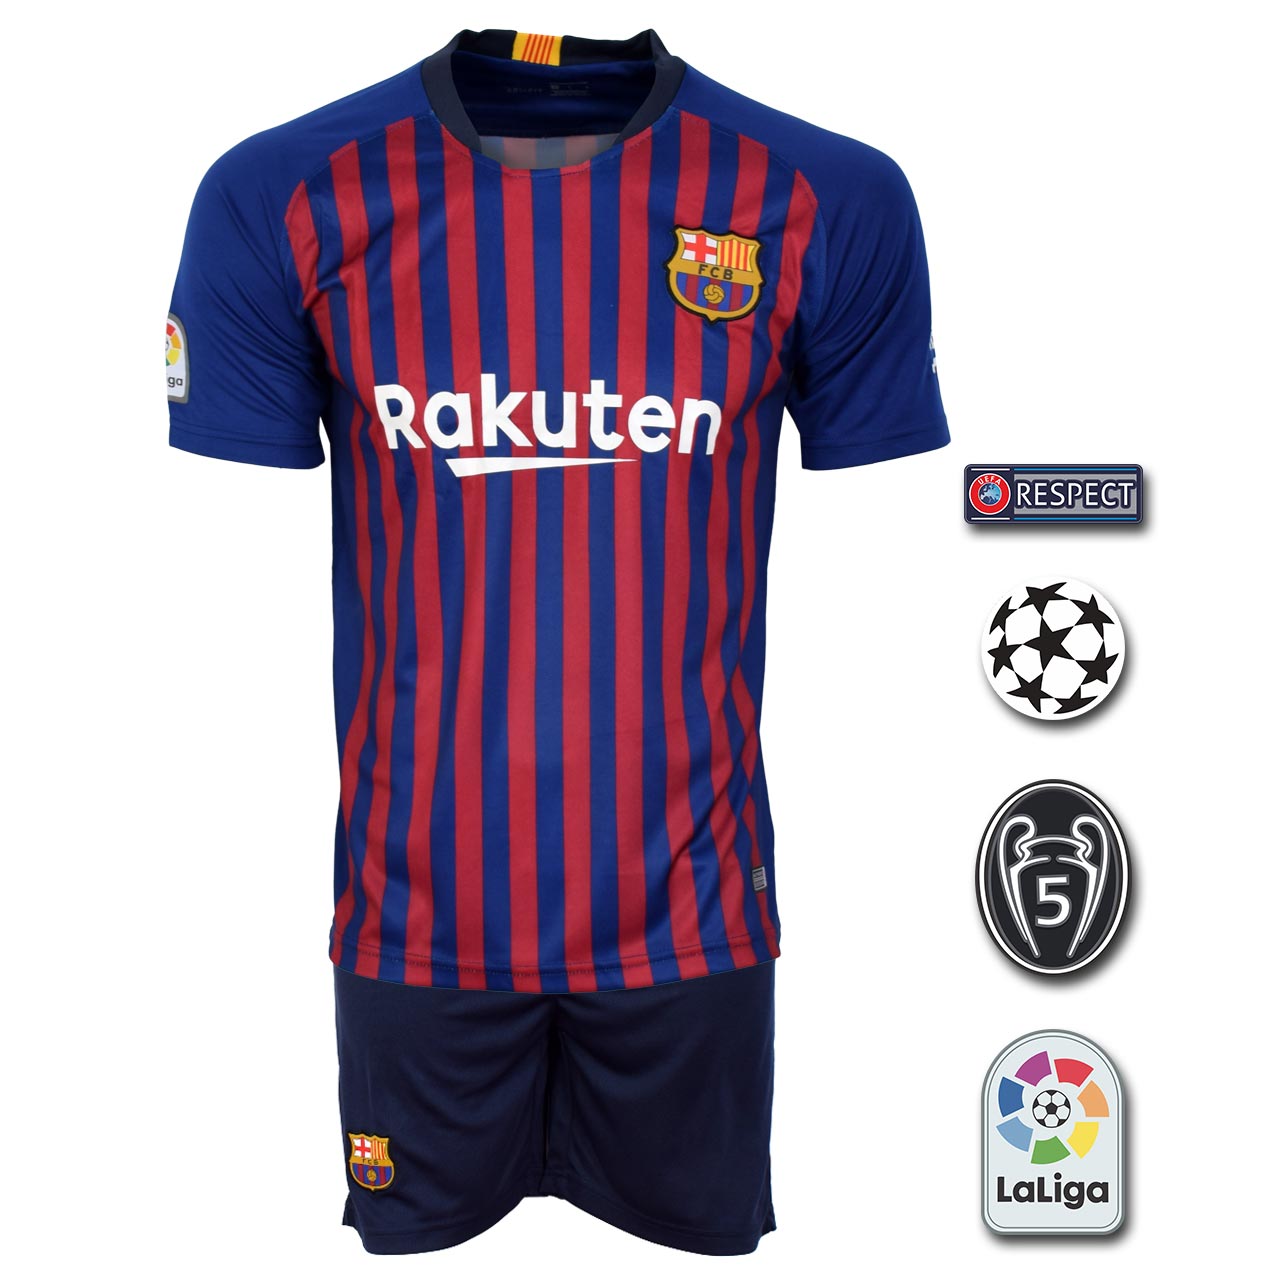 پیراهن و شورت ورزشی مدل بارسلونا Home18/19 به همراه تگ